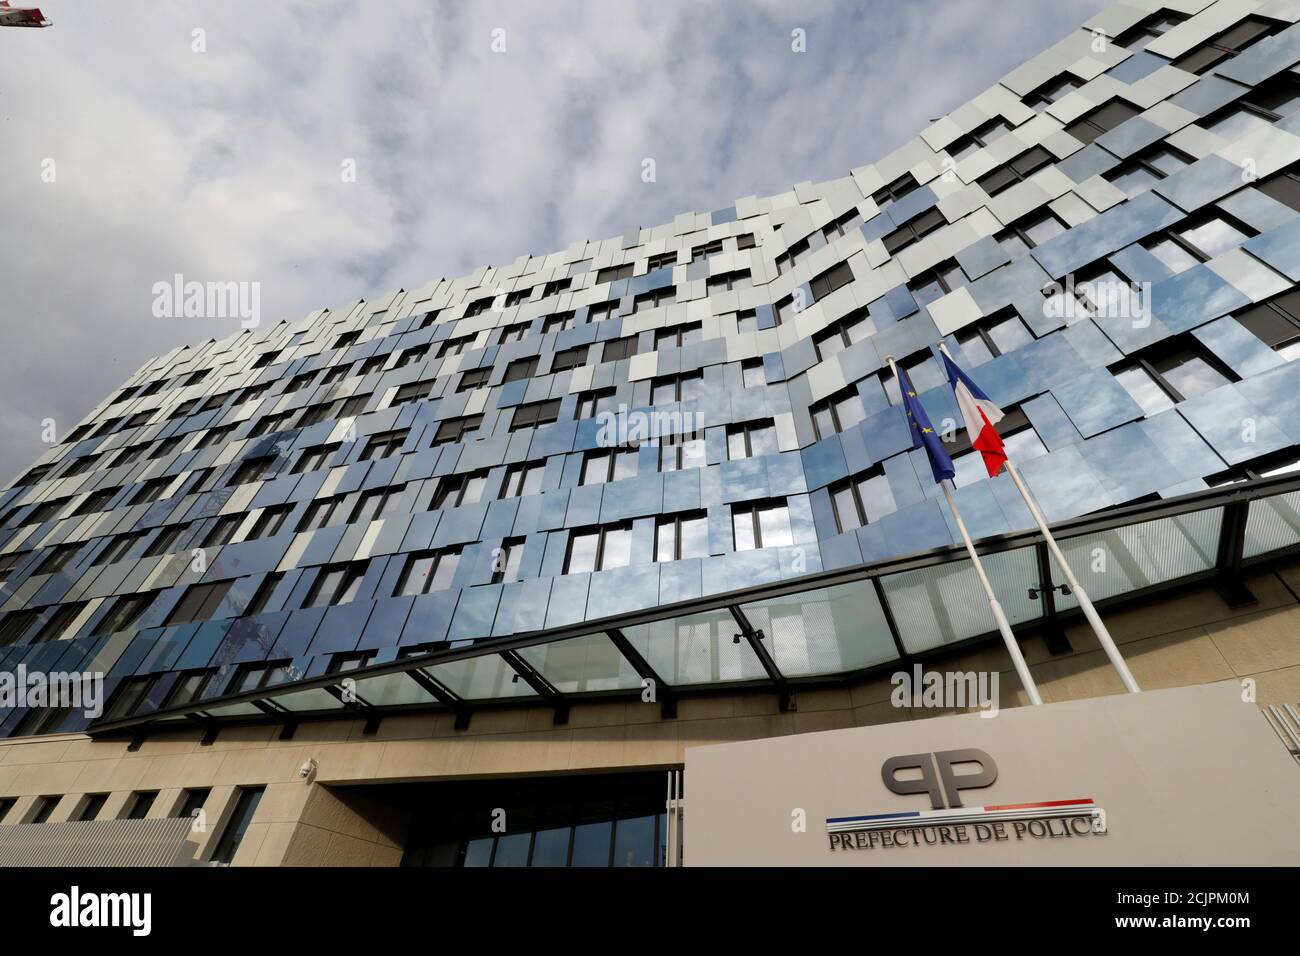 Vista della nuova sede della direzione Regionale della polizia giudiziaria  di Parigi (DRPJ Paris), la divisione investigativa penale della polizia  nazionale, installata alla rue du Bastion 36 a Parigi, Francia, 19 ottobre